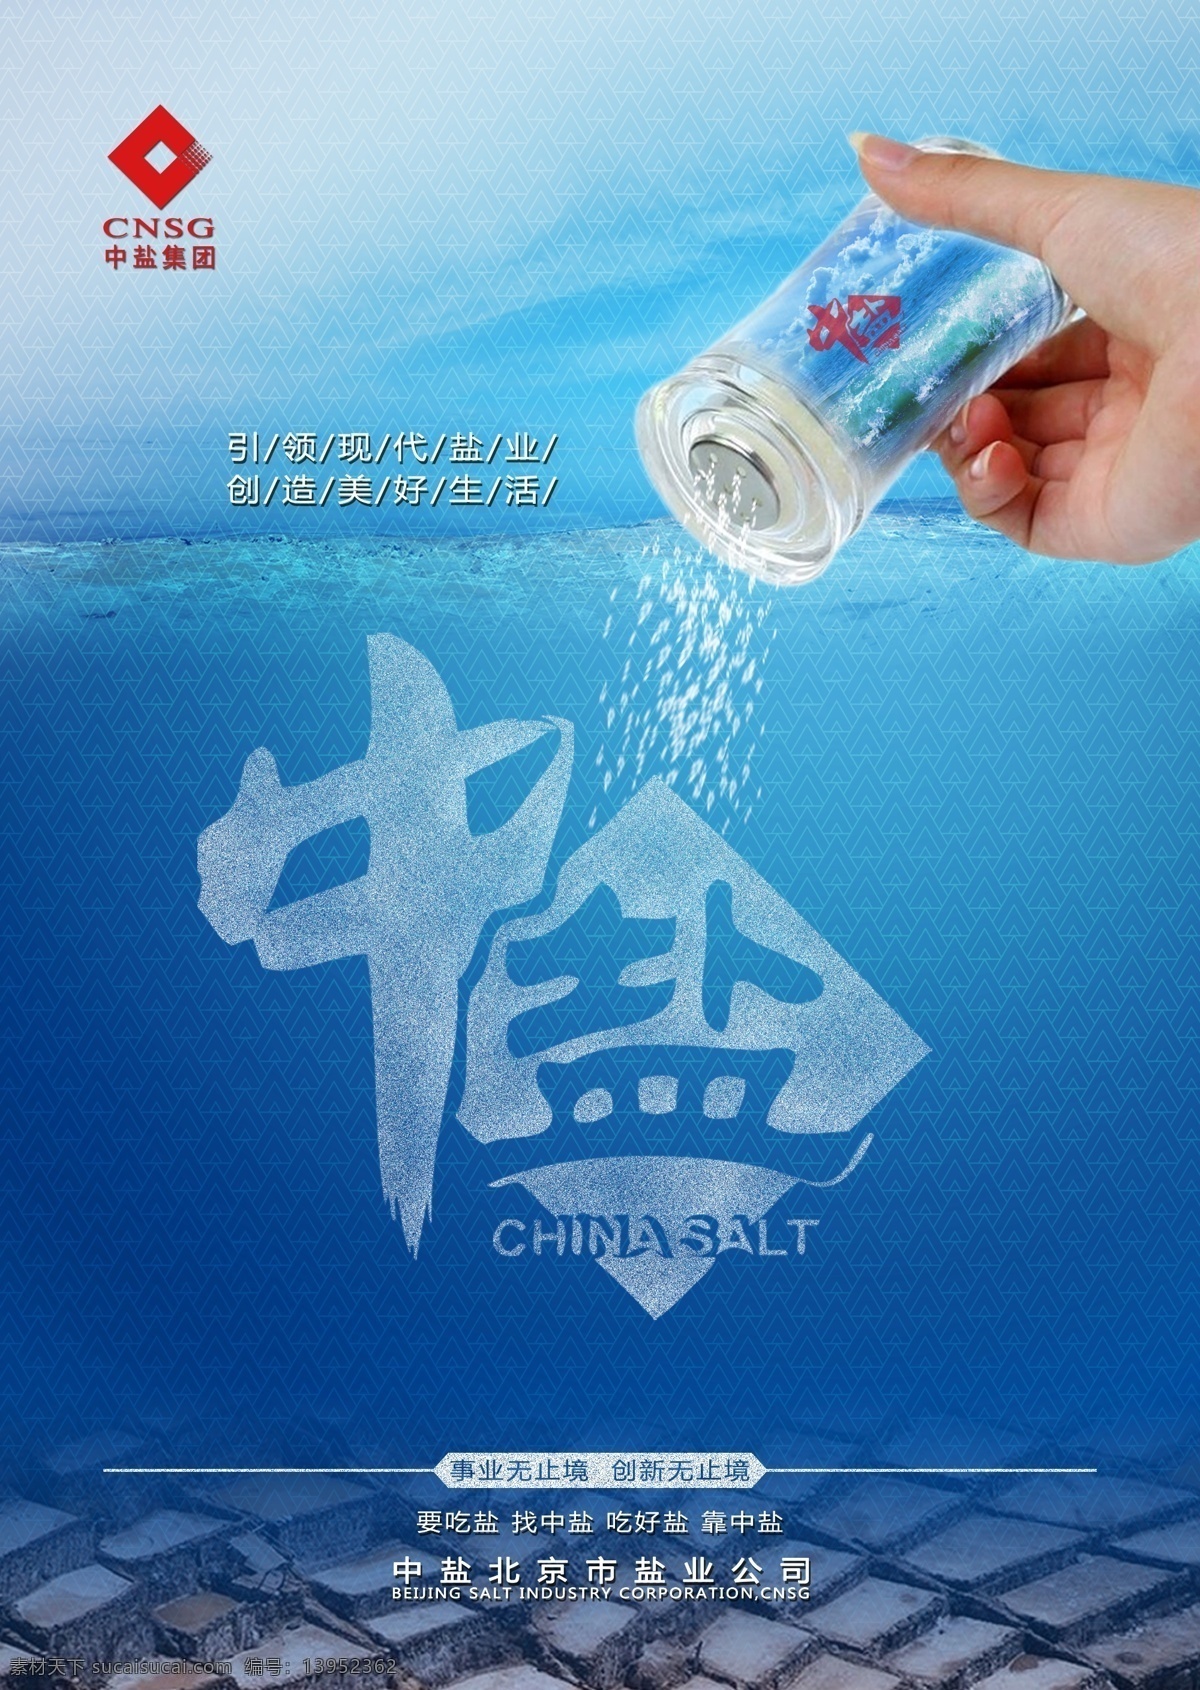 2014 中 盐 产品 提案 中盐 产品海报设计 超市海报 产品主视觉 食盐广告 海报 2014中盐 分层